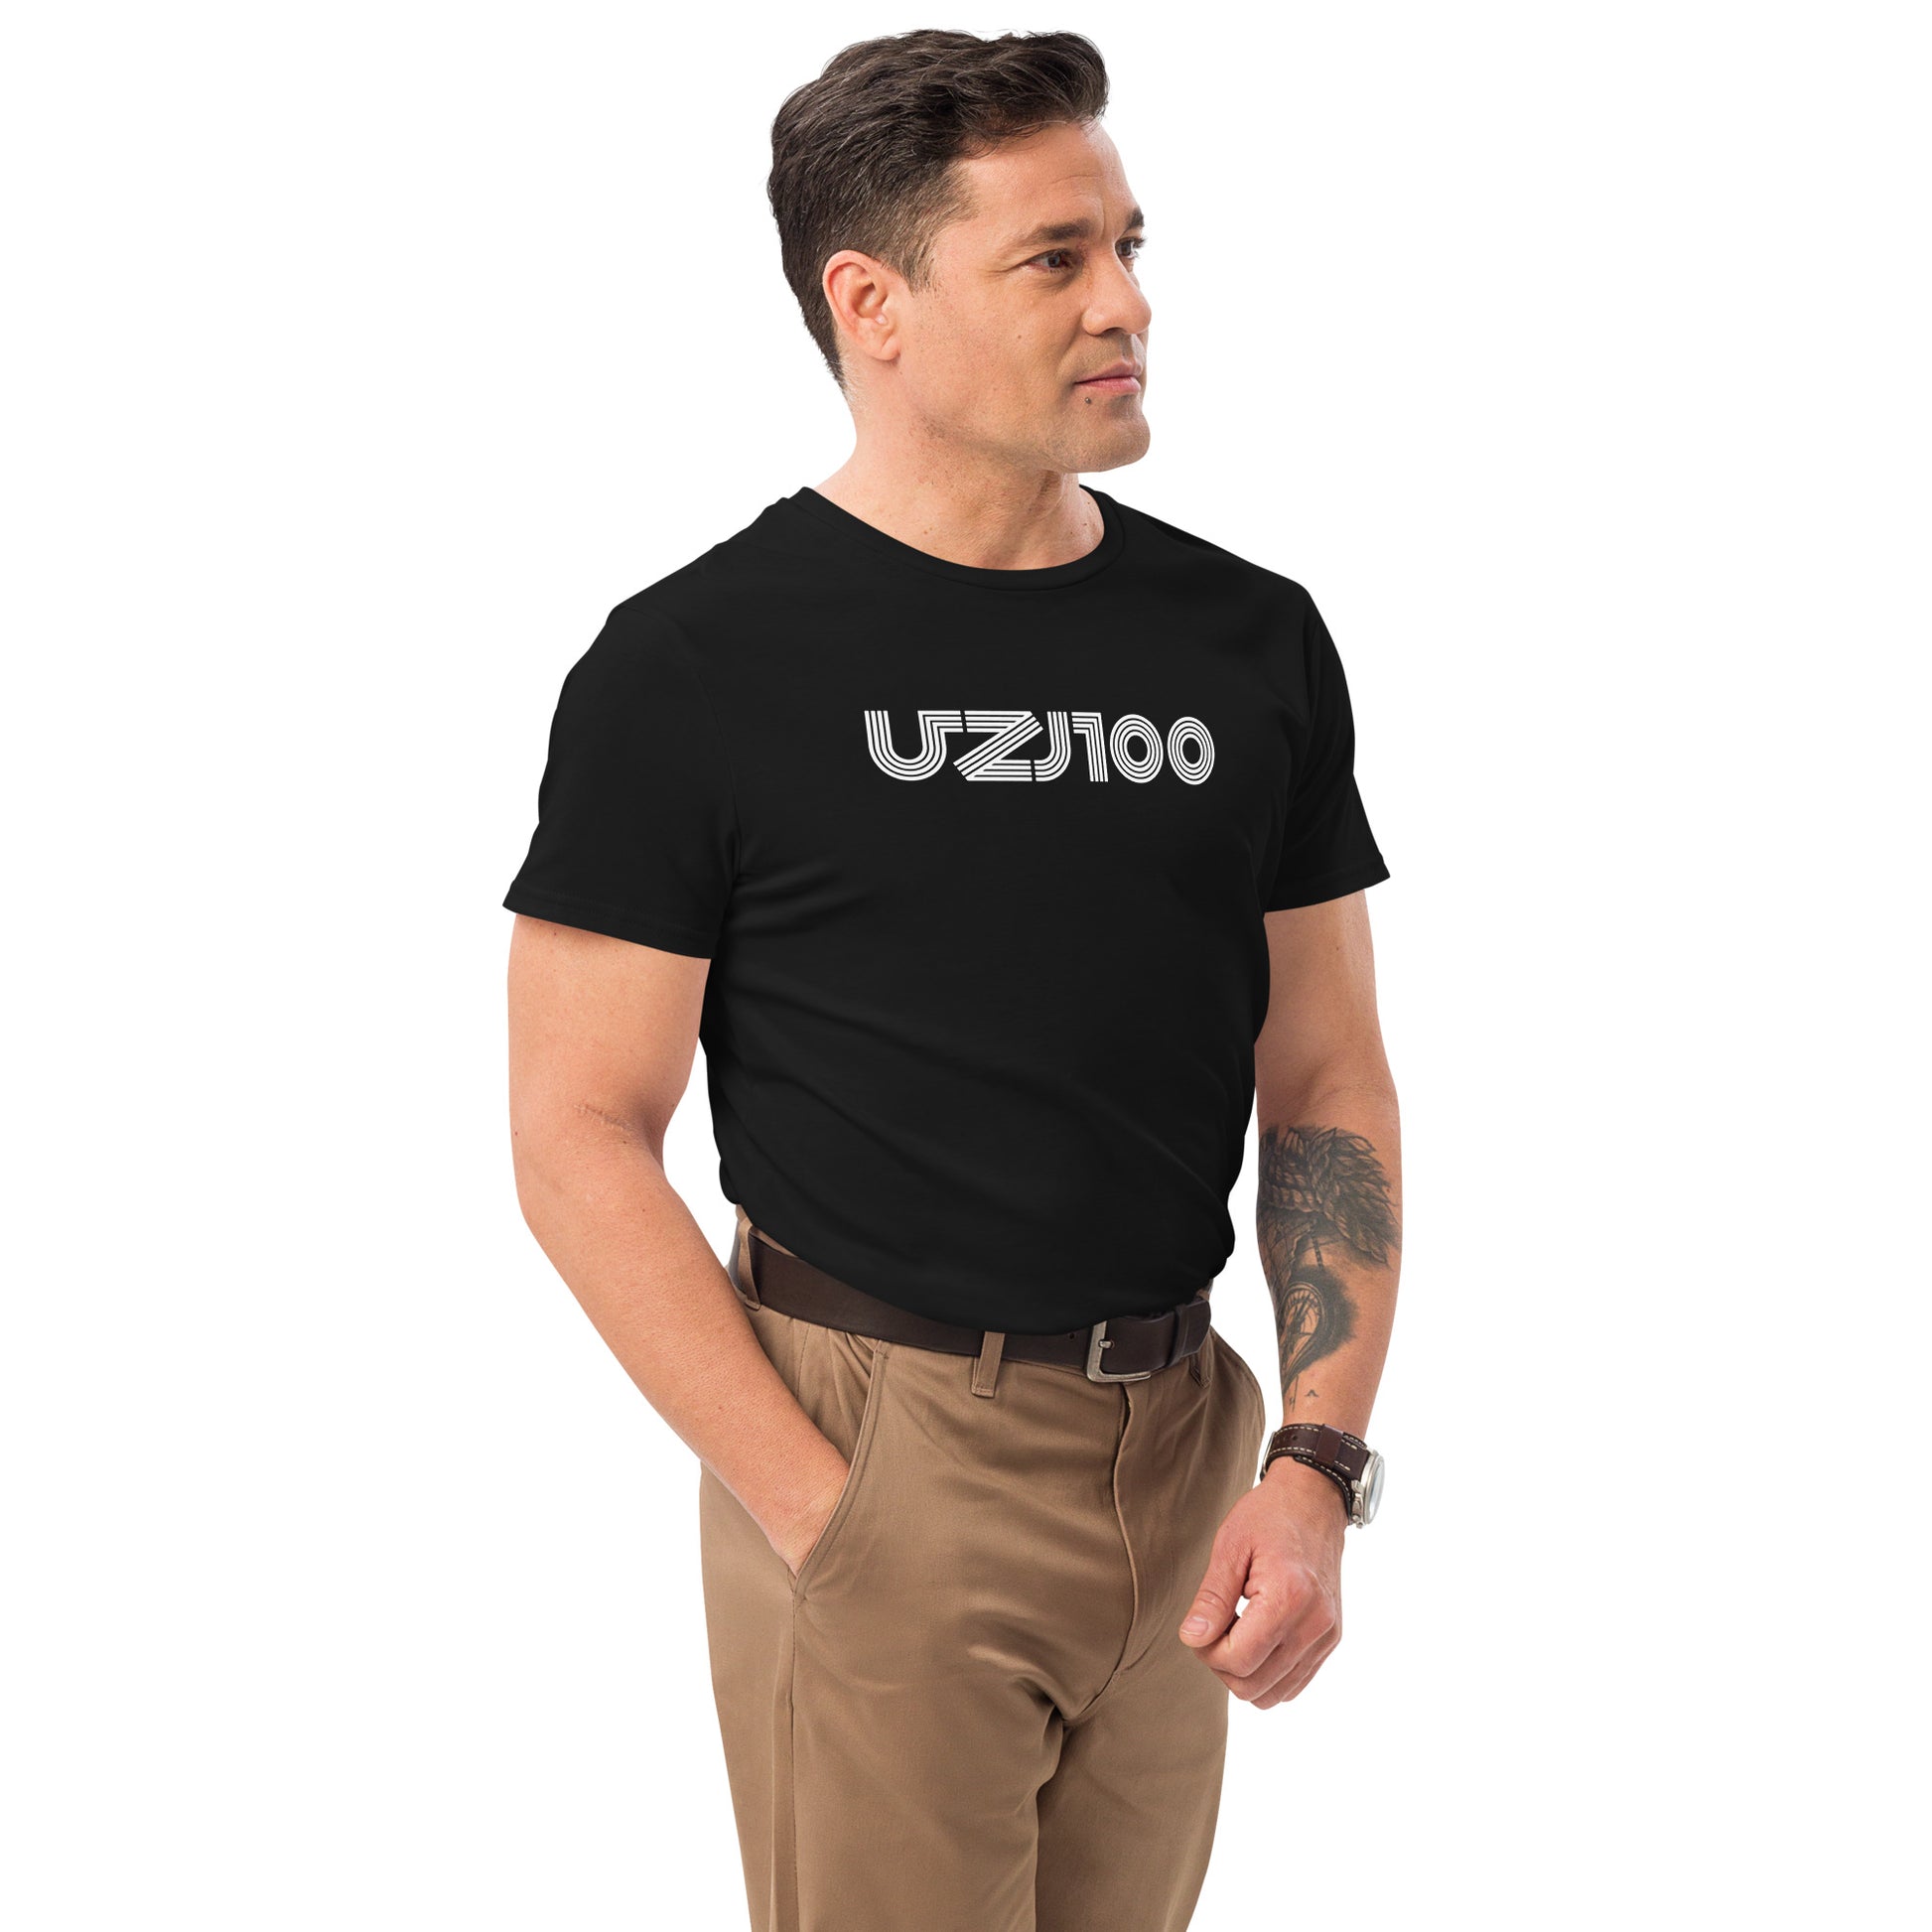 UZJ100 - LOGO - Men's premium cotton t-shirt - Merch-Mkt